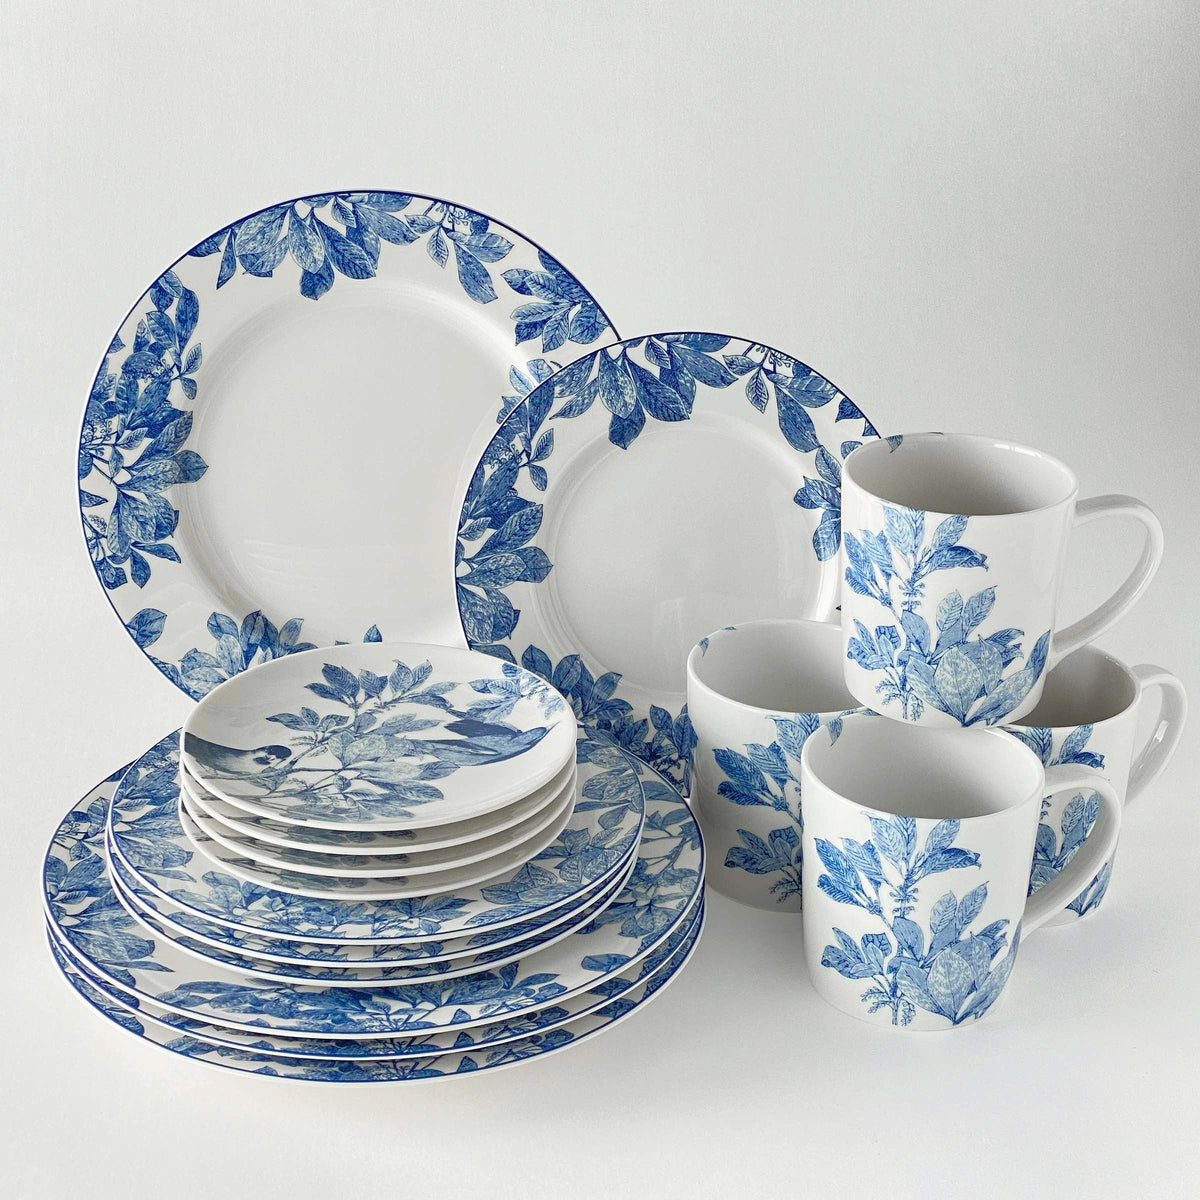 A blue and white Caskata Artisanal Home Arbor Blue Birds Canapé Plates dinnerware set with porcelain cups and saucers.